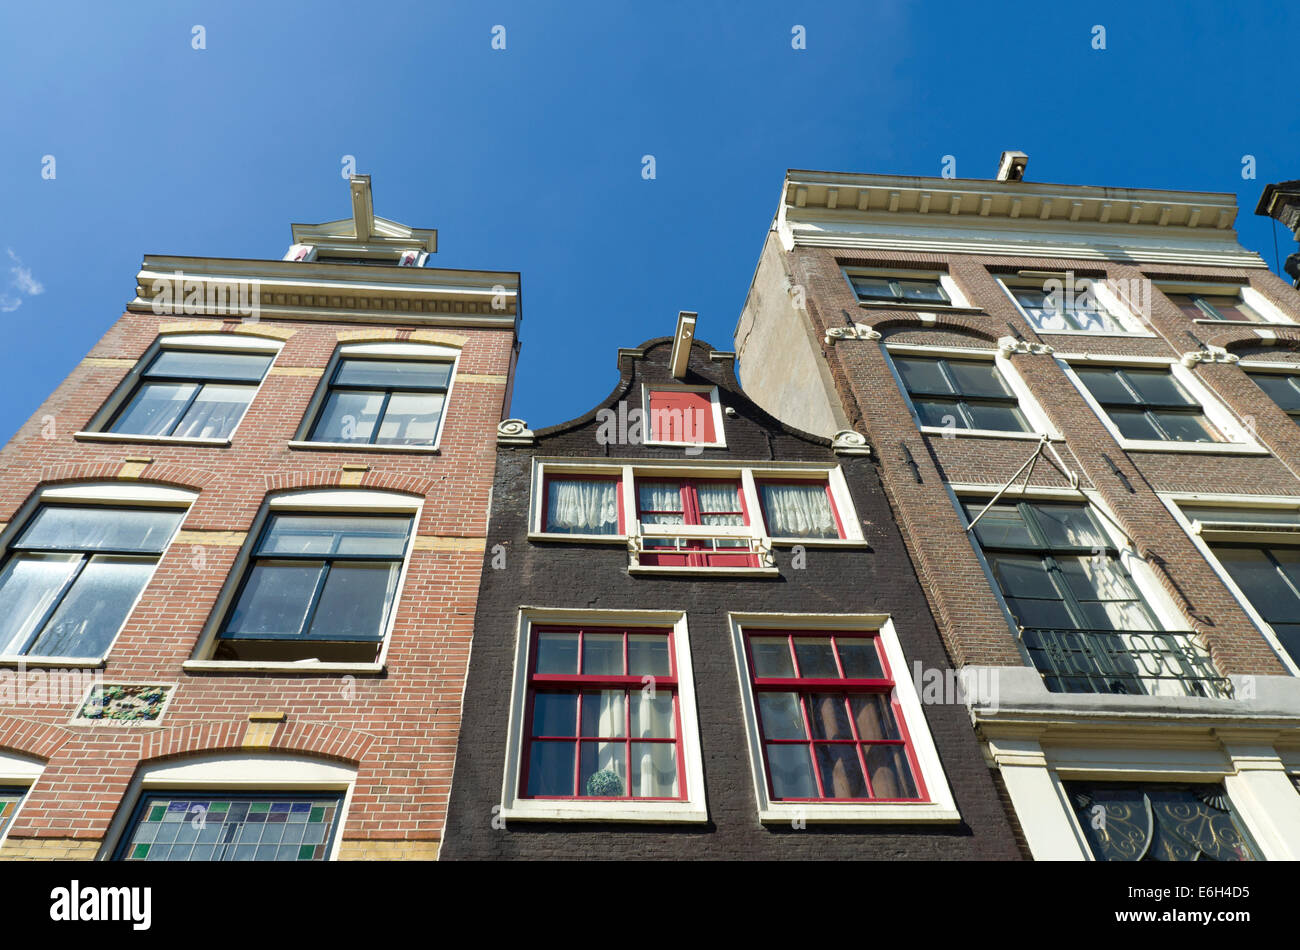 Las fachadas de las casas monumentales en amsterdam Foto de stock